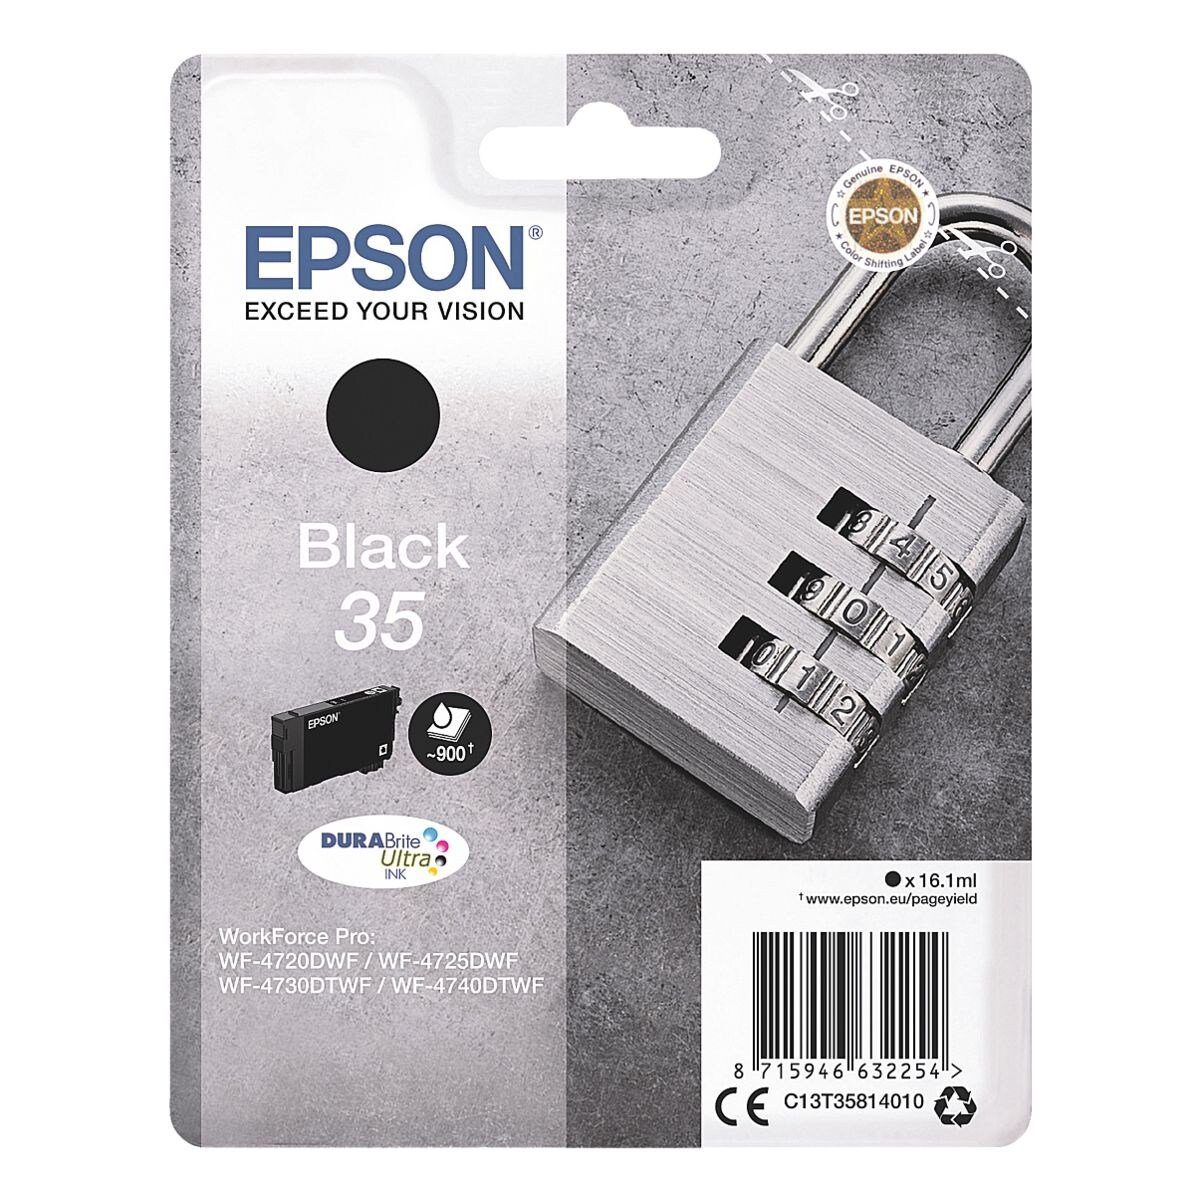 35 Tintenpatrone (Original Epson Druckerpatrone, schwarz)